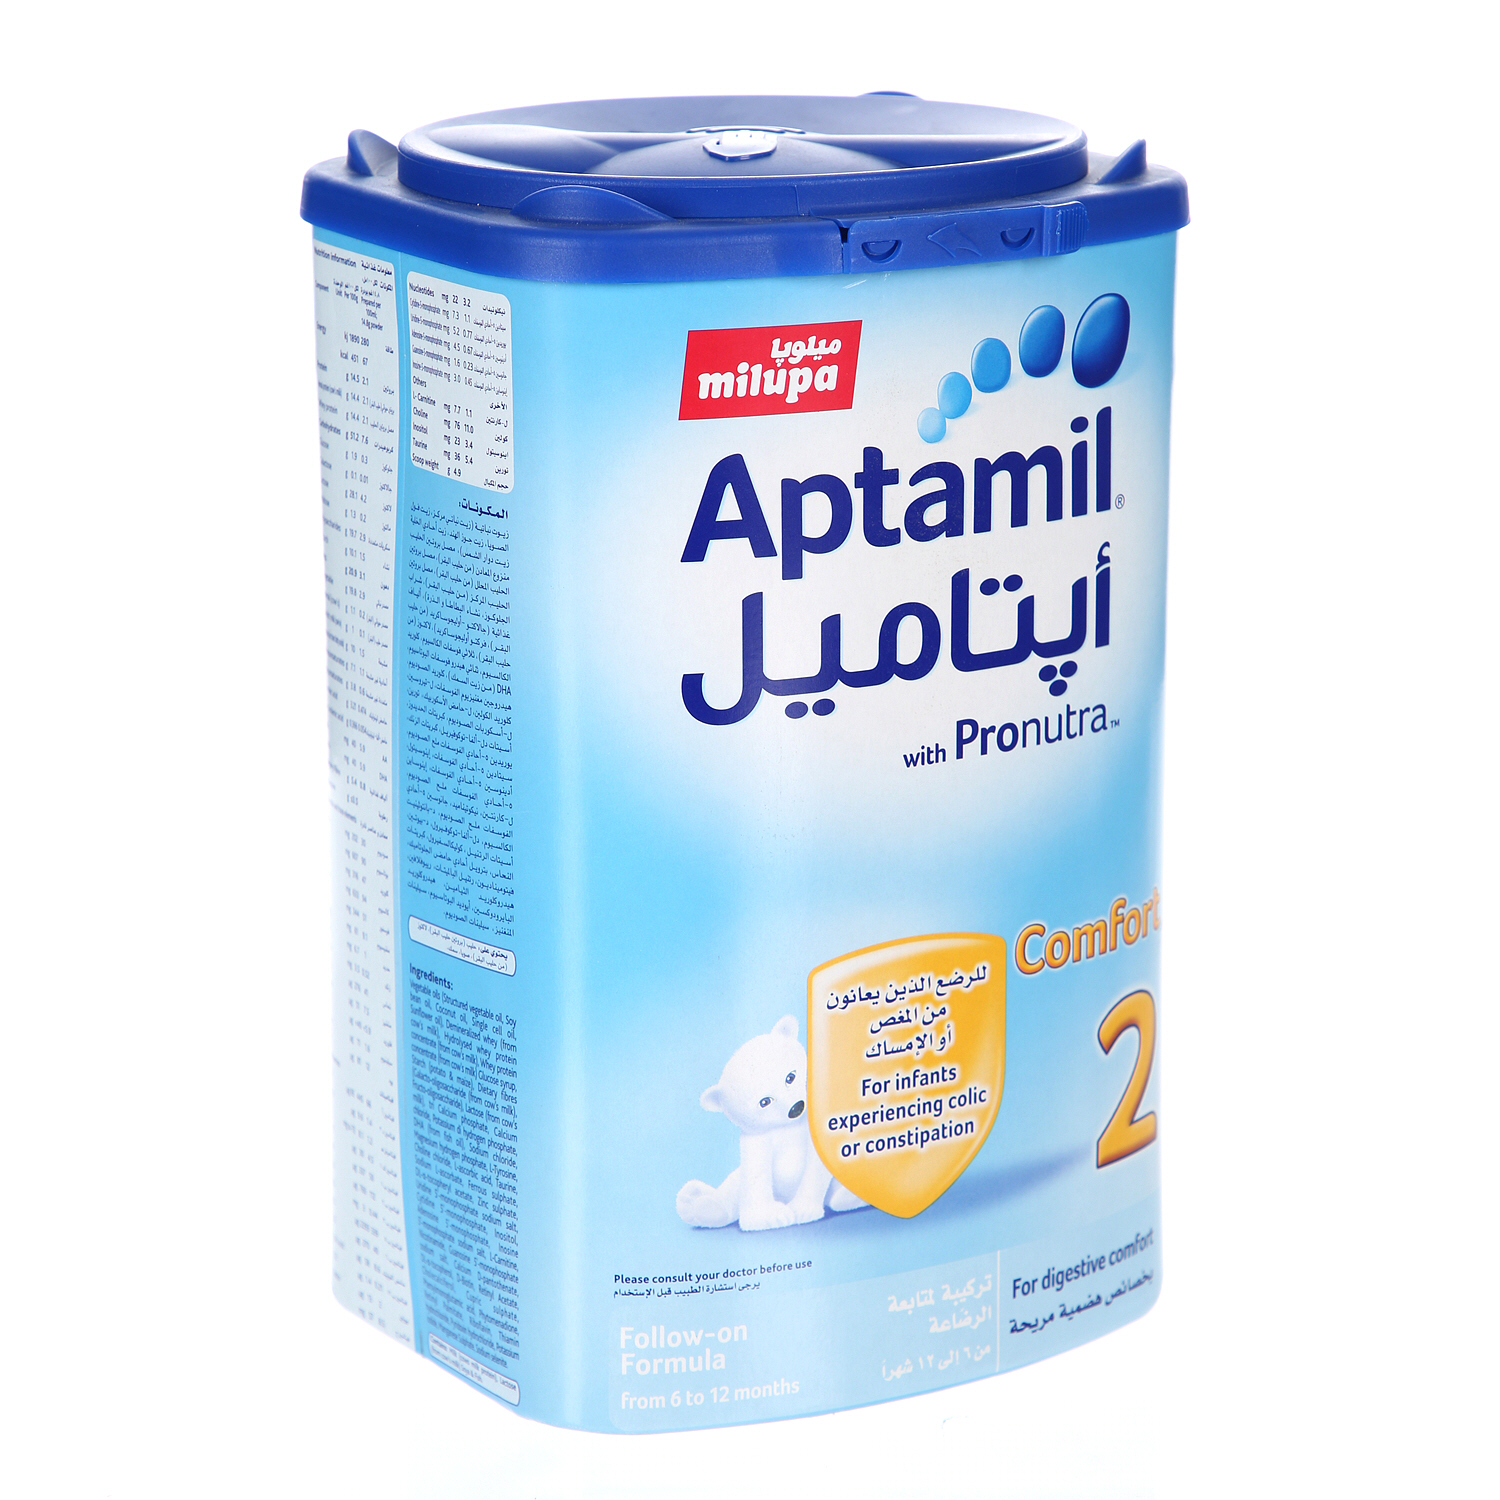 ميلوبا أبتاميل مسحوق الحليب بخصائص هضمية مريحة للأطفال 900 جرام